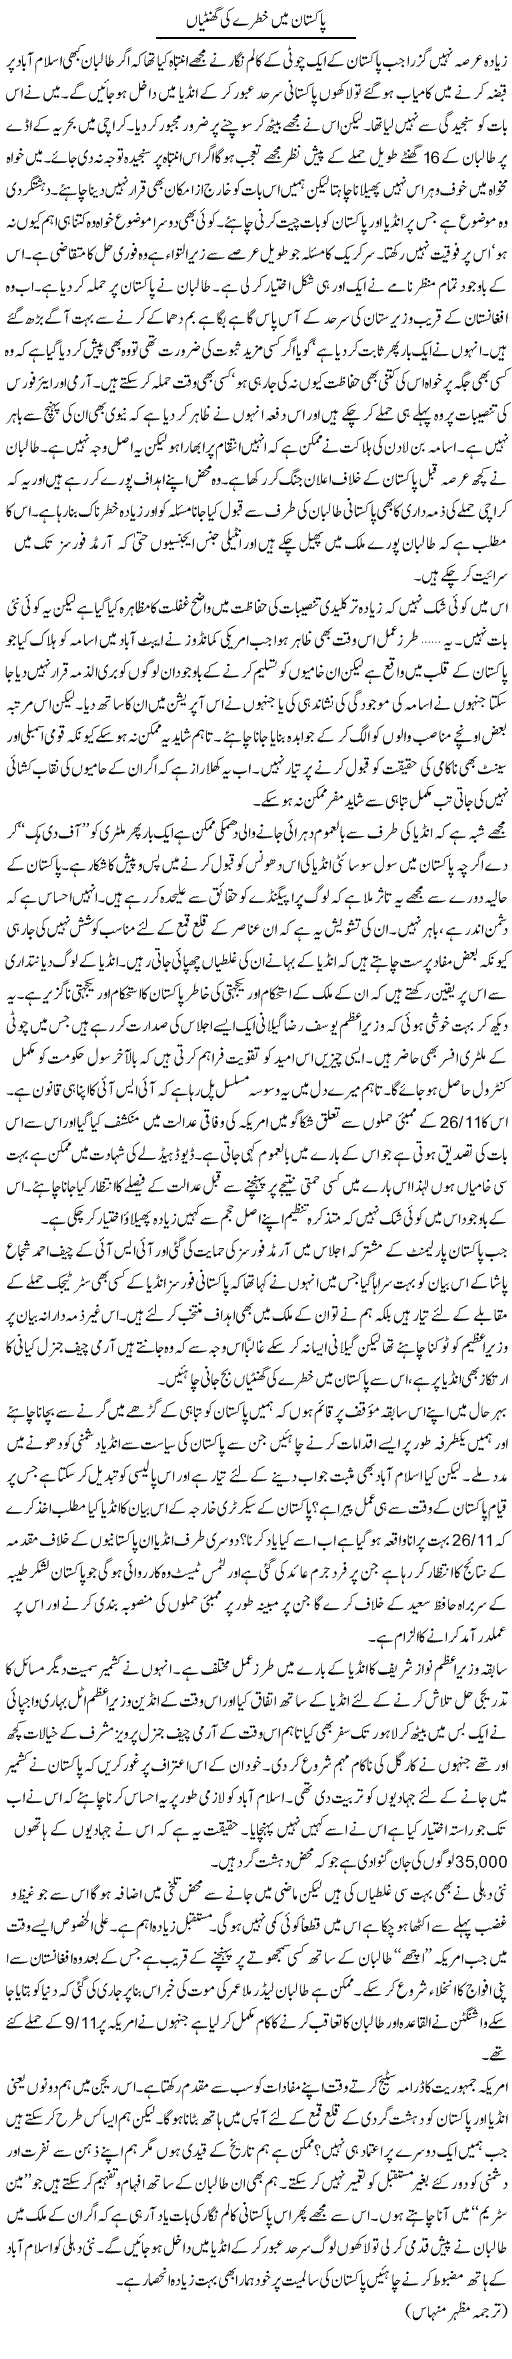 Danger in Pakistan Express Column Kuldeep Nayar 27 May 2011